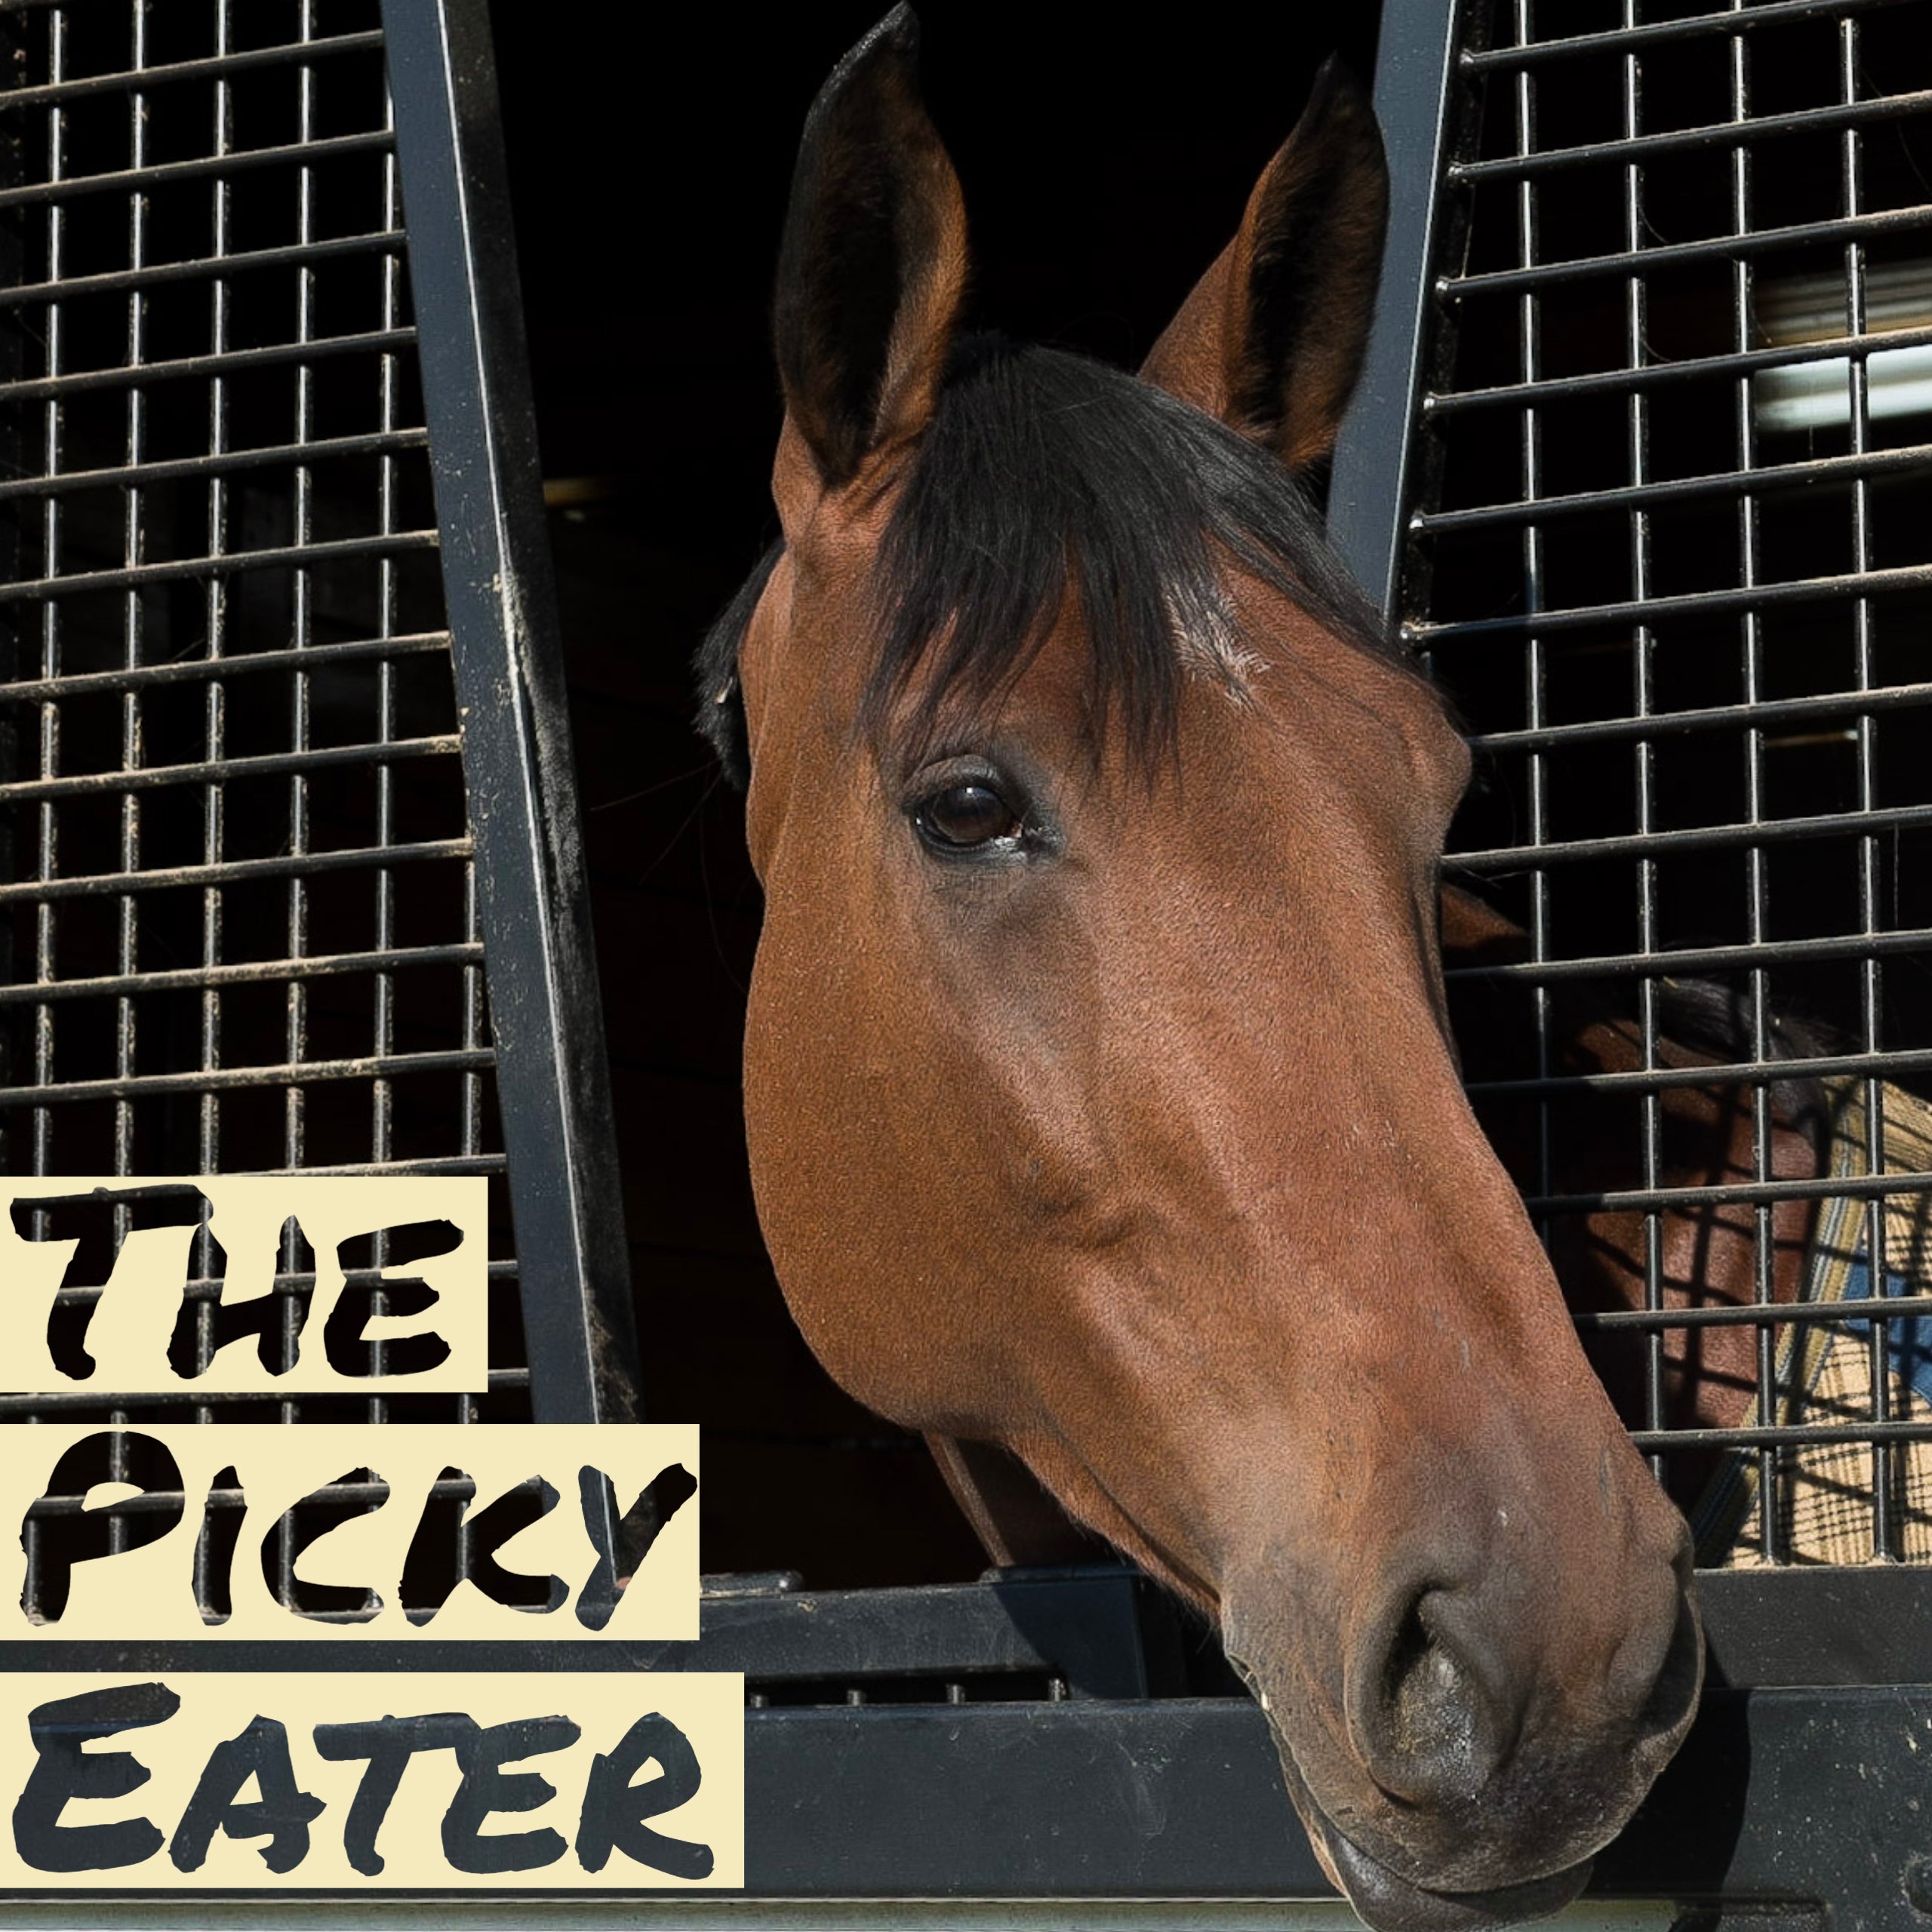 picky eater horse